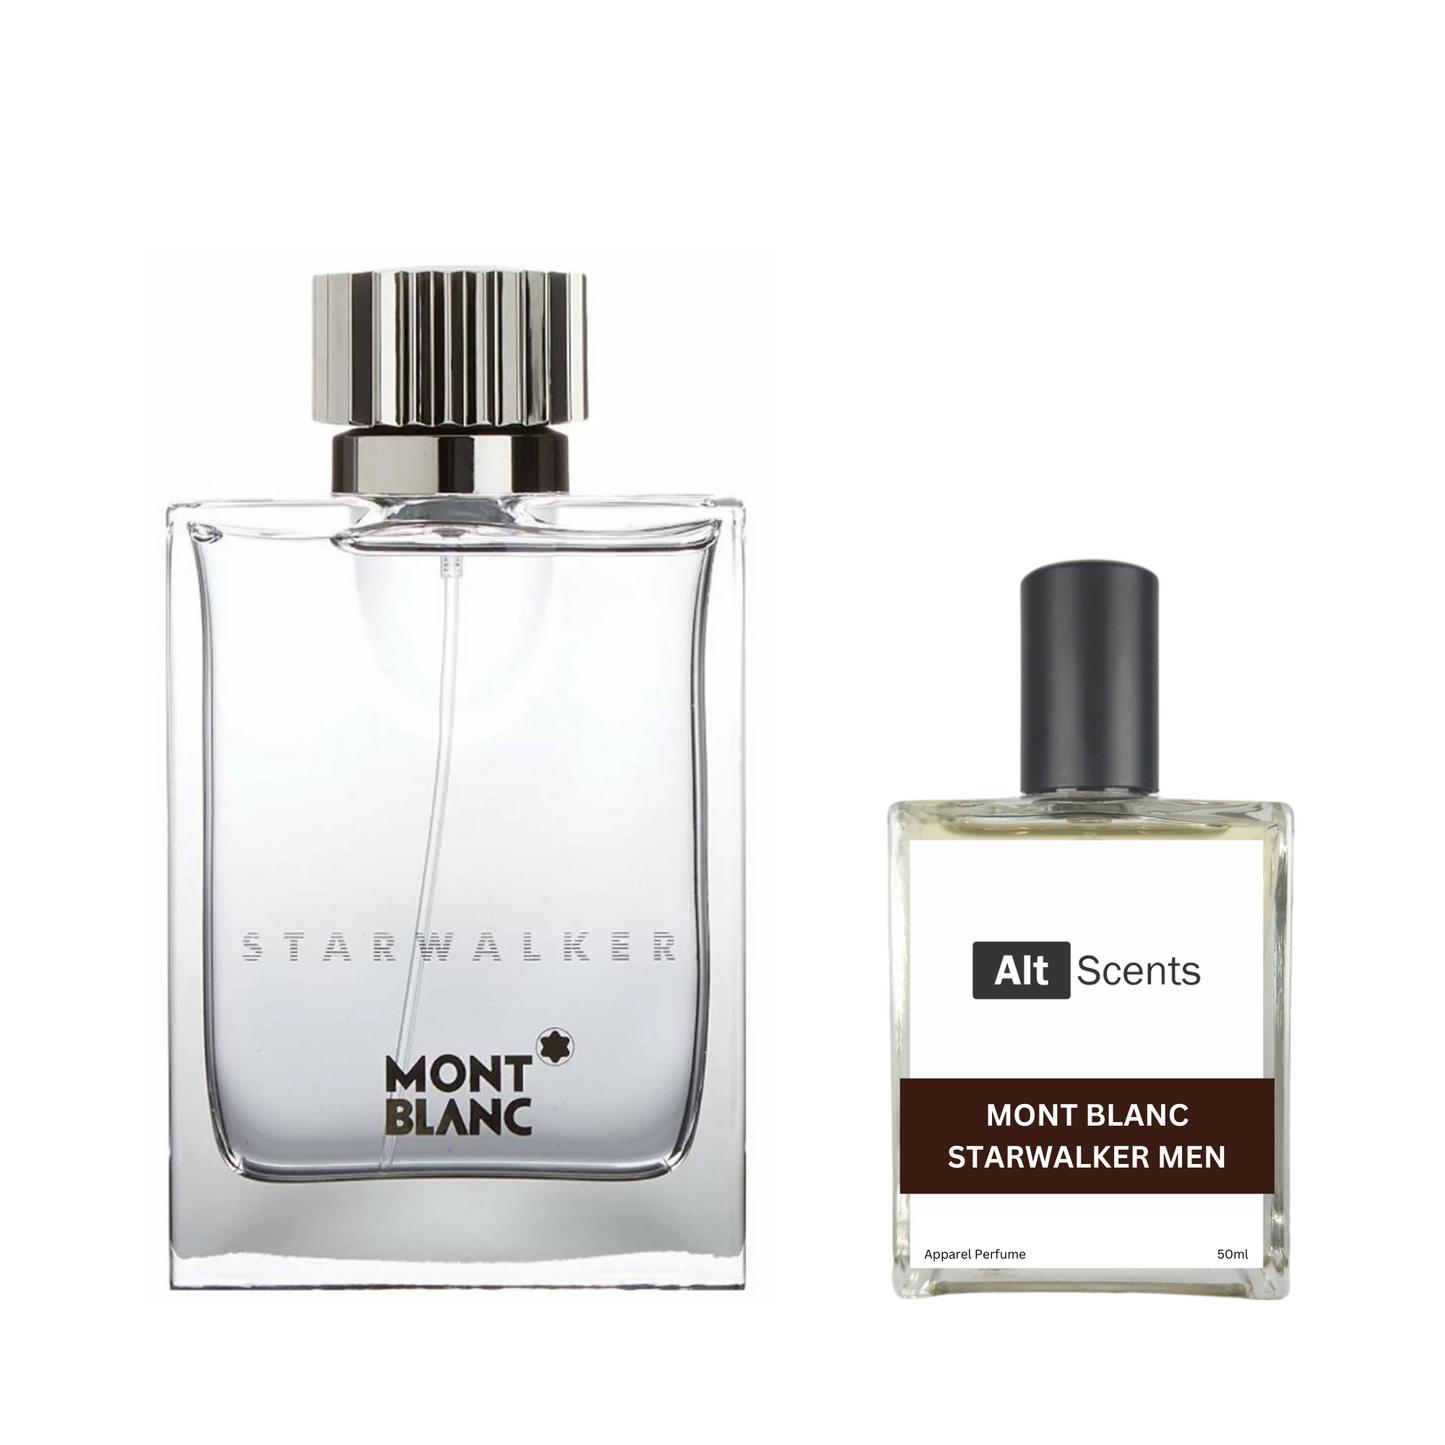 Mont Blanc Starwalker Men type Perfume for Men